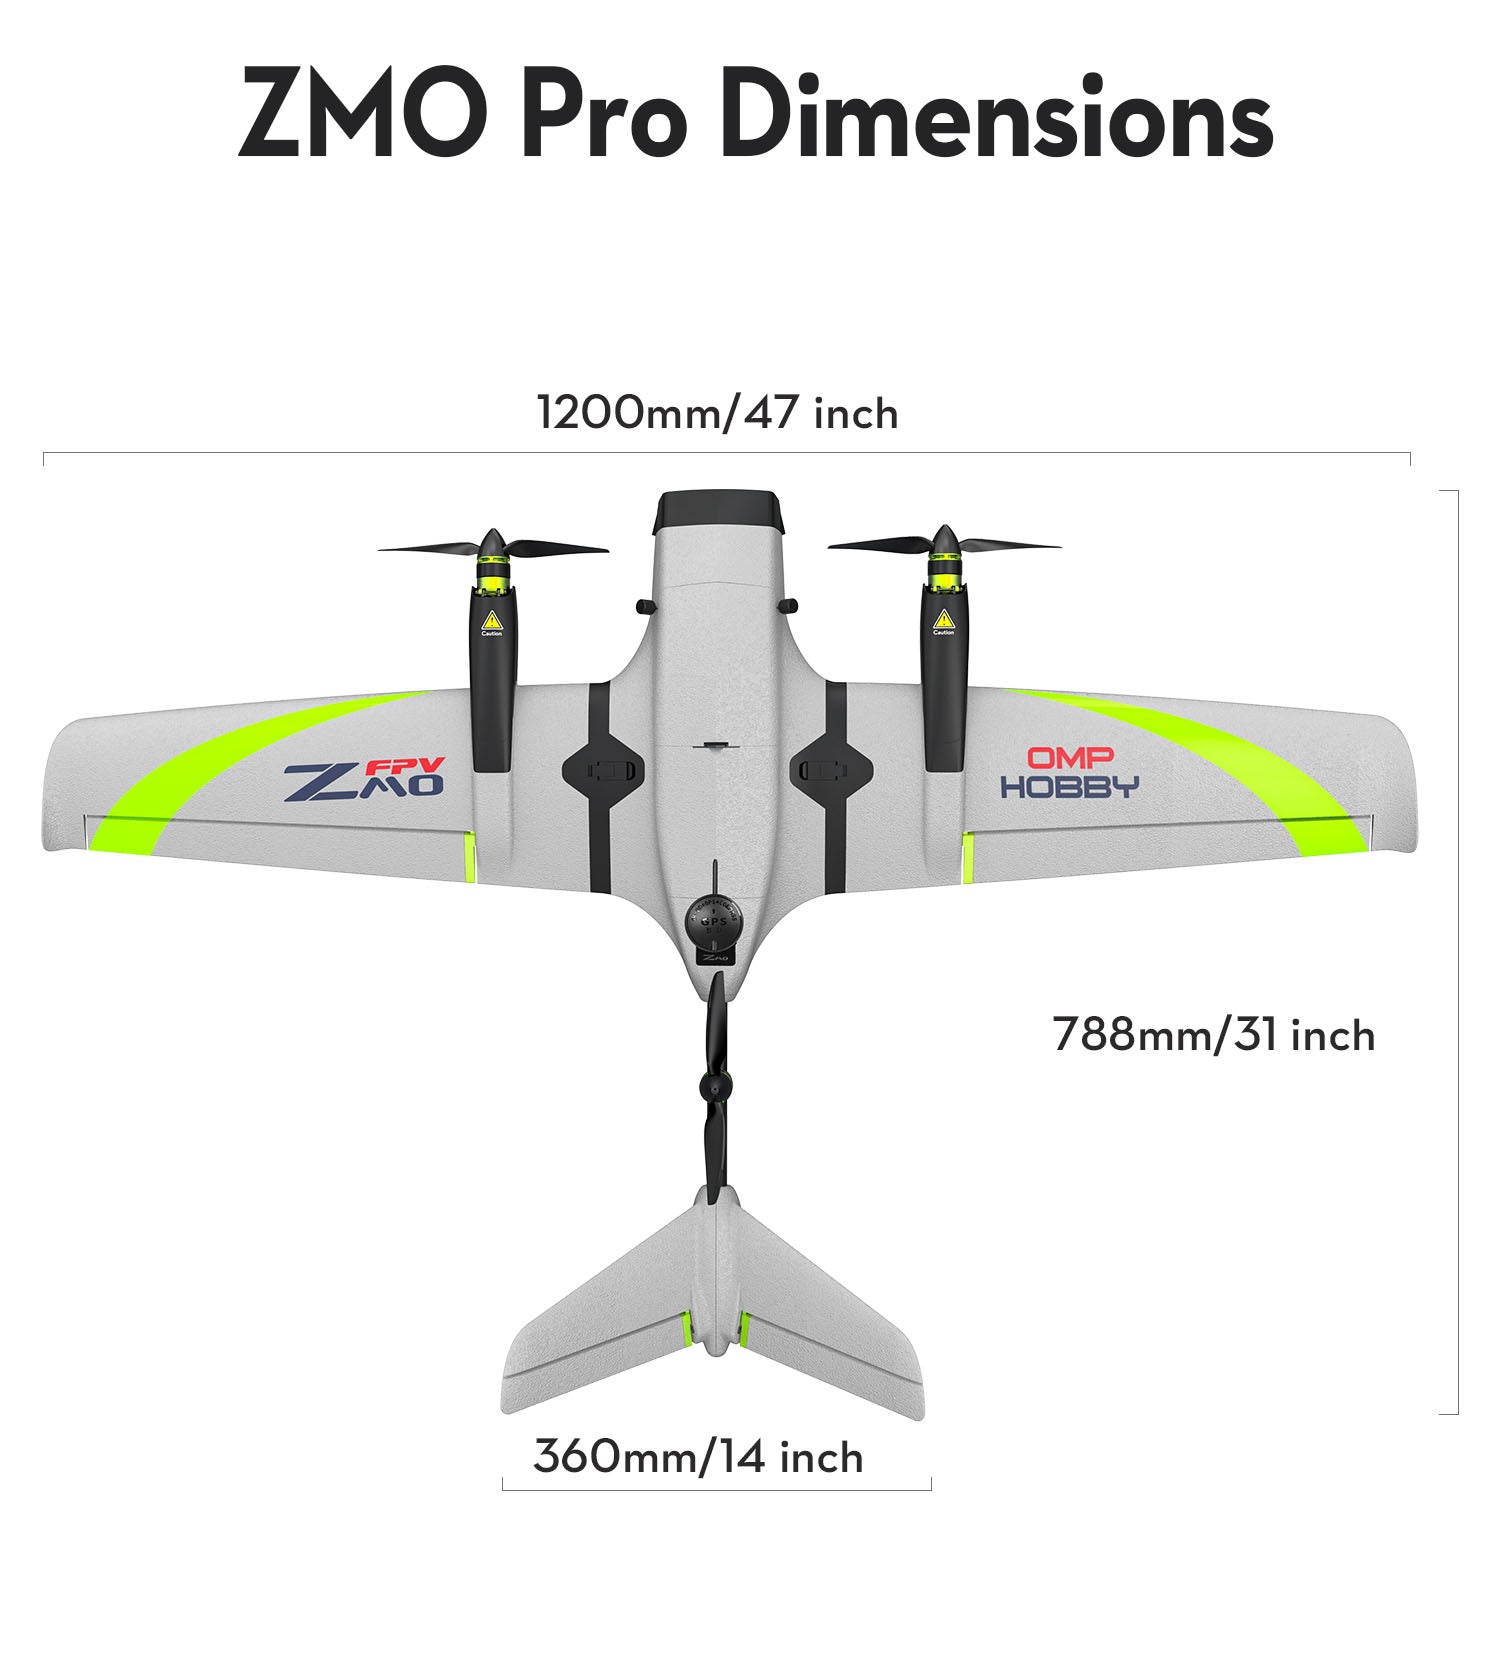 OMPHOBBY ZMO Pro VTOL FPV aircraft dimensions: 1200mm x 788mm x 360mm.